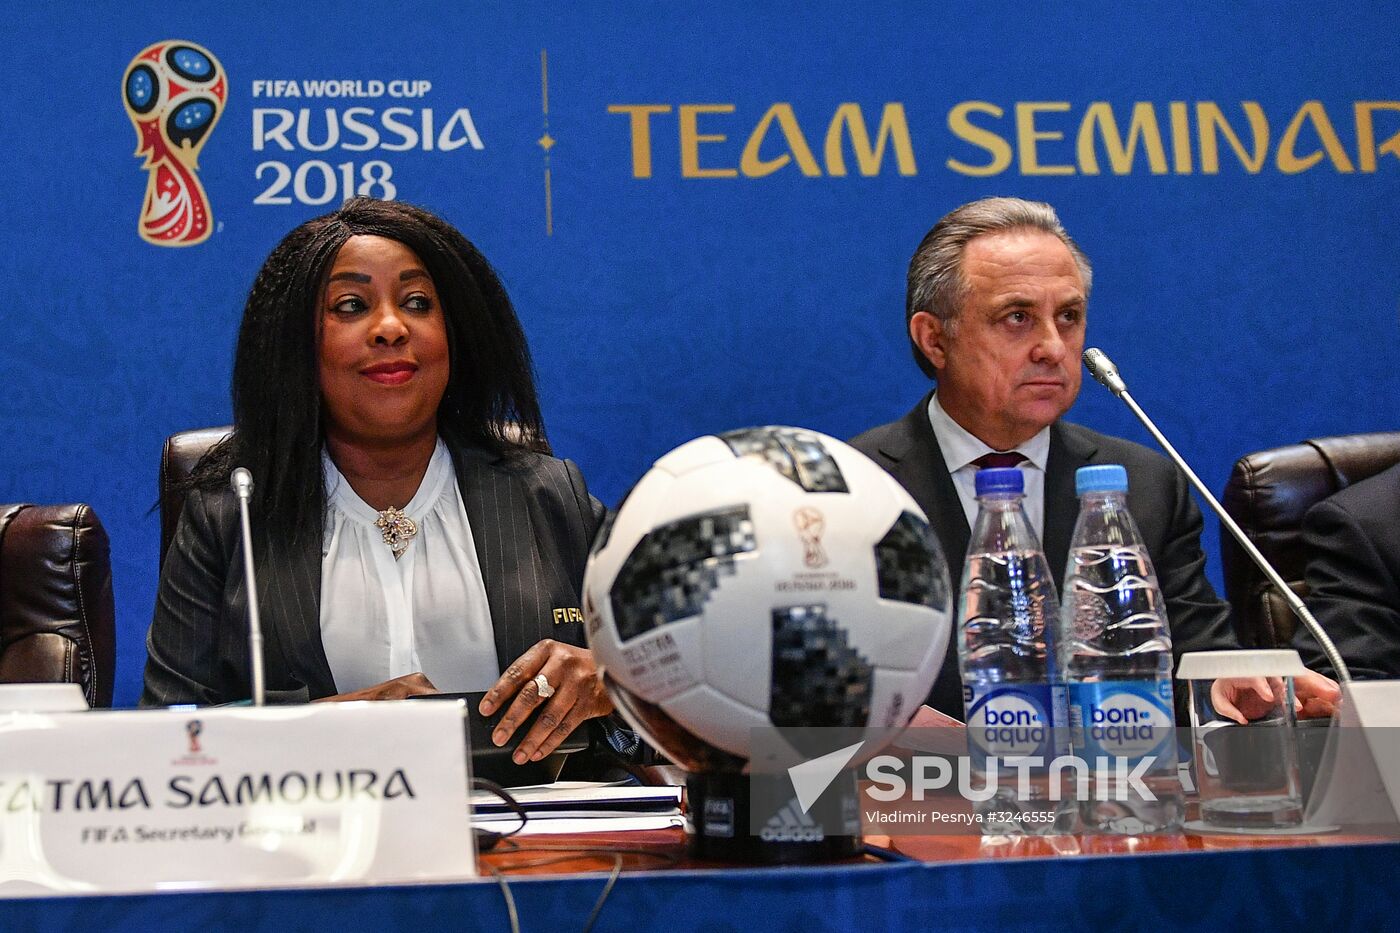 Seminar for 2018 FIFA World Cup teams' coaches